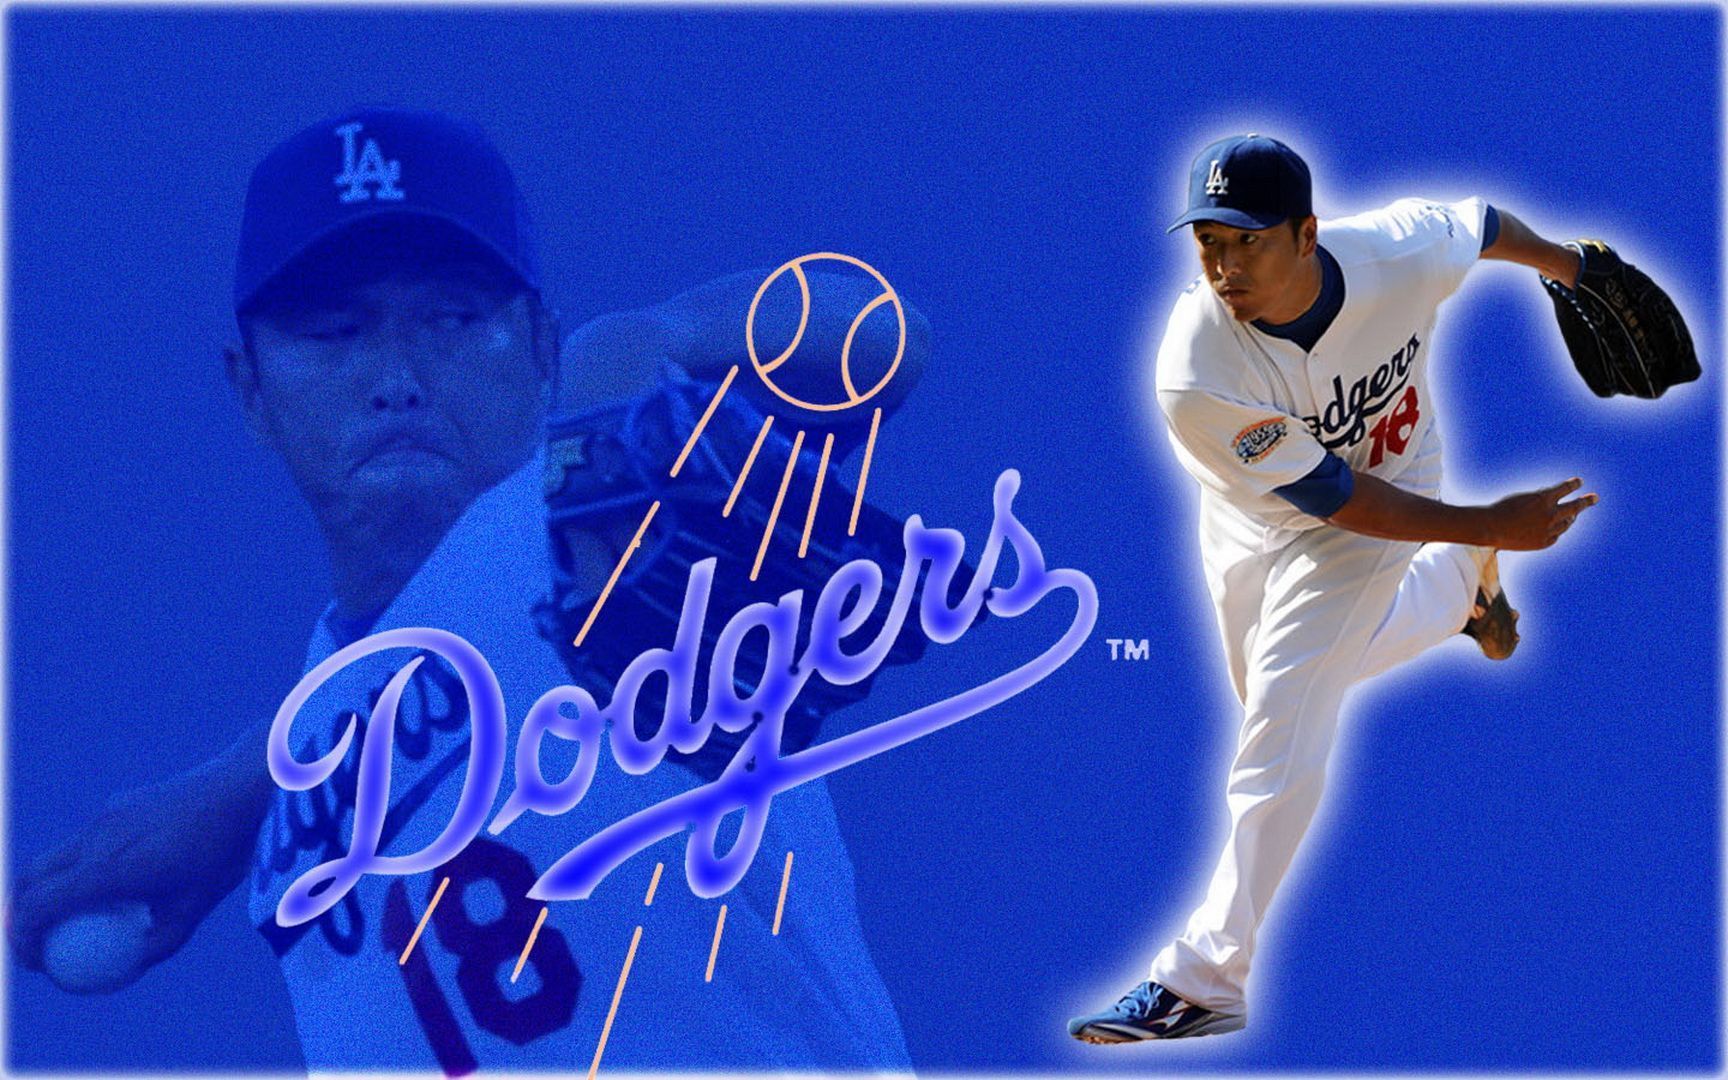 Wallpaperres.com | Los Angeles Dodgers Wallpaper Baseball 03